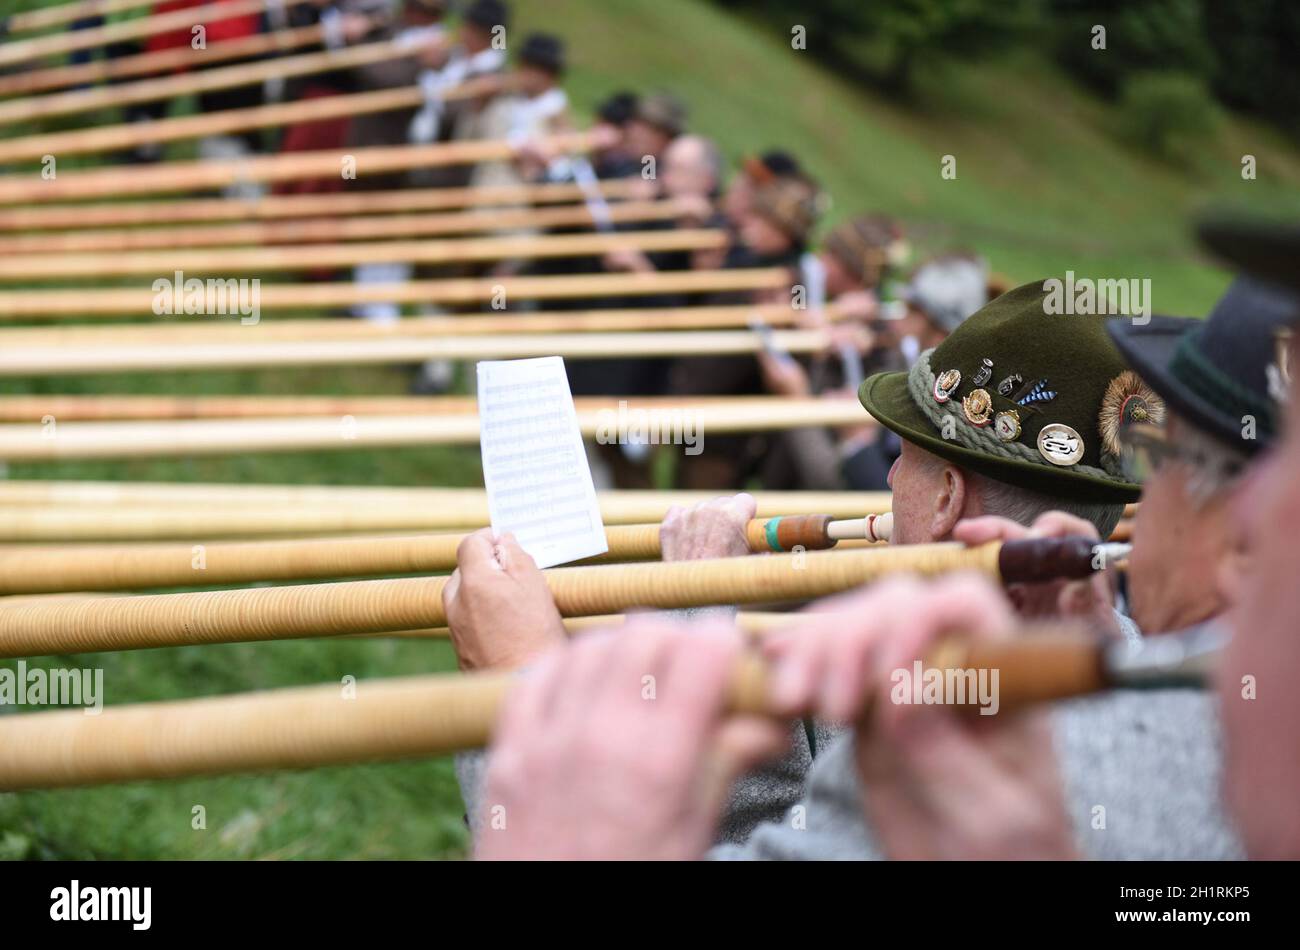 Das 'Alphorn' ist ein mehrere Meter langes hölzernes Musikinstrument - The 'alphorn' is a wooden musical instrument several meters long Stock Photo